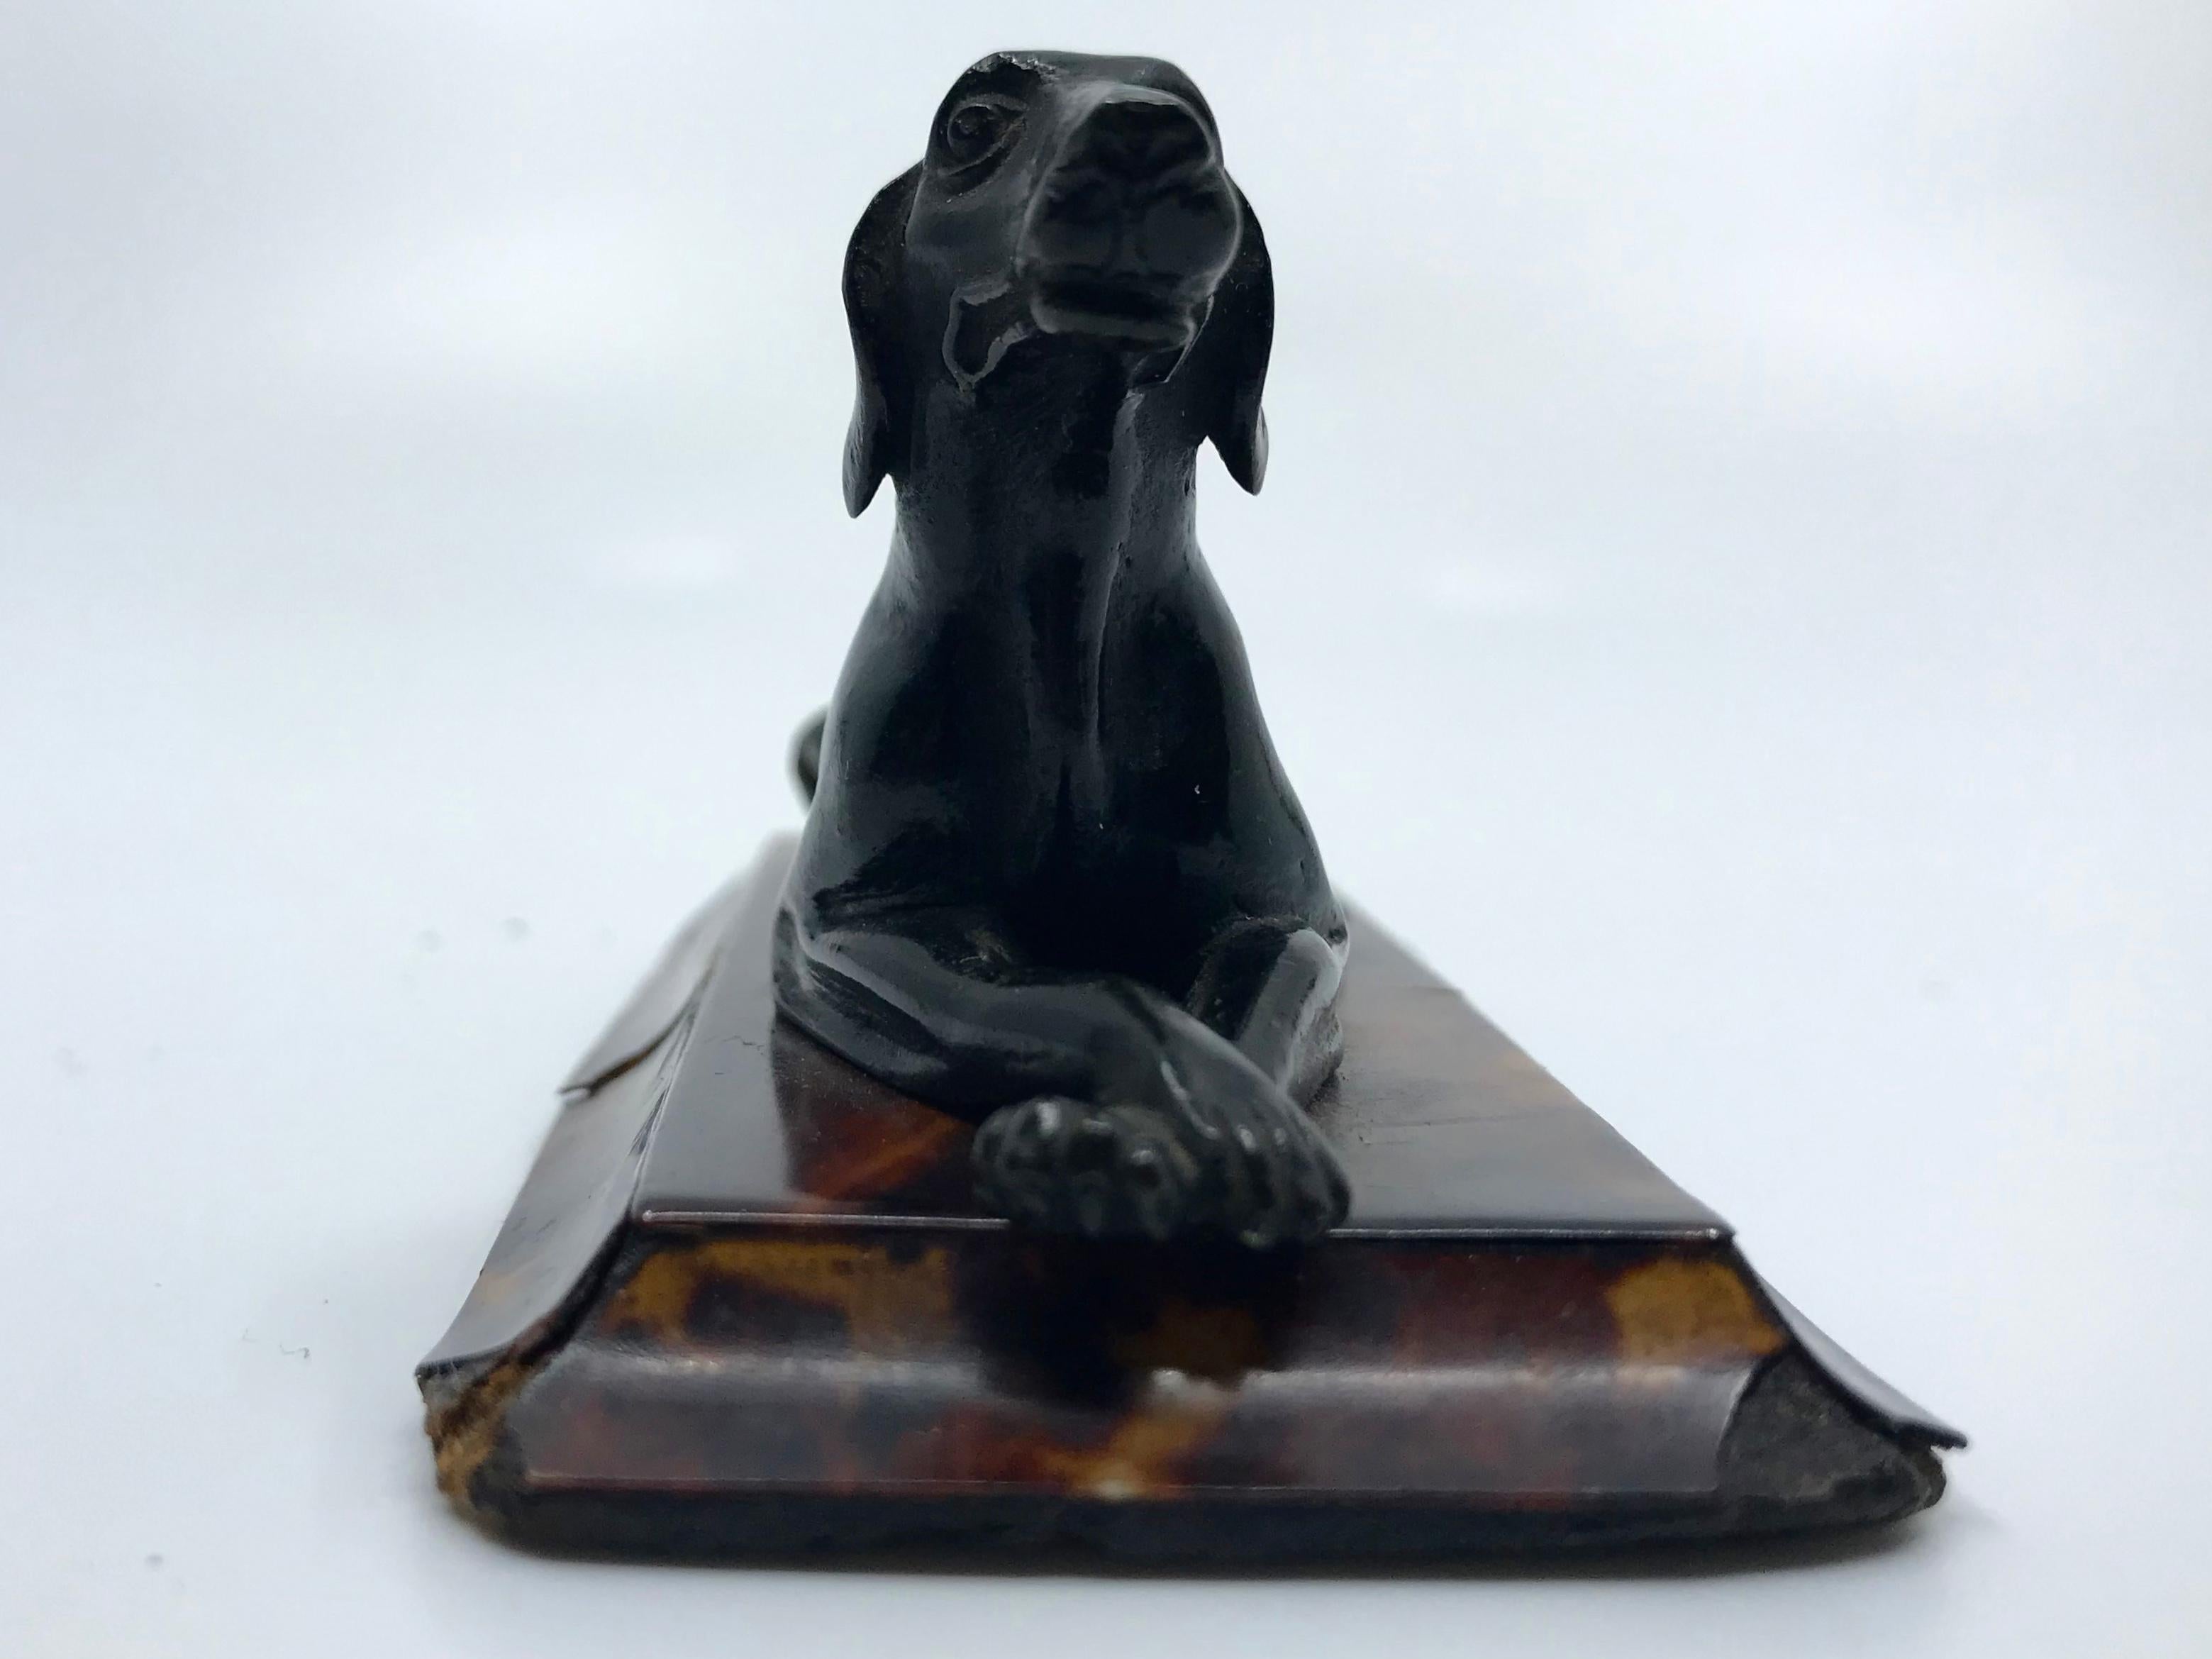 Sculpture de chien de chasse en bronze de style Régence sur base en écaille de tortue. Sculpture de chien de chasse en bronze anglais sur un socle bas sculpté d'origine, recouvert d'écaille de tortue, Angleterre, années 1820.
Dimensions : 4.38